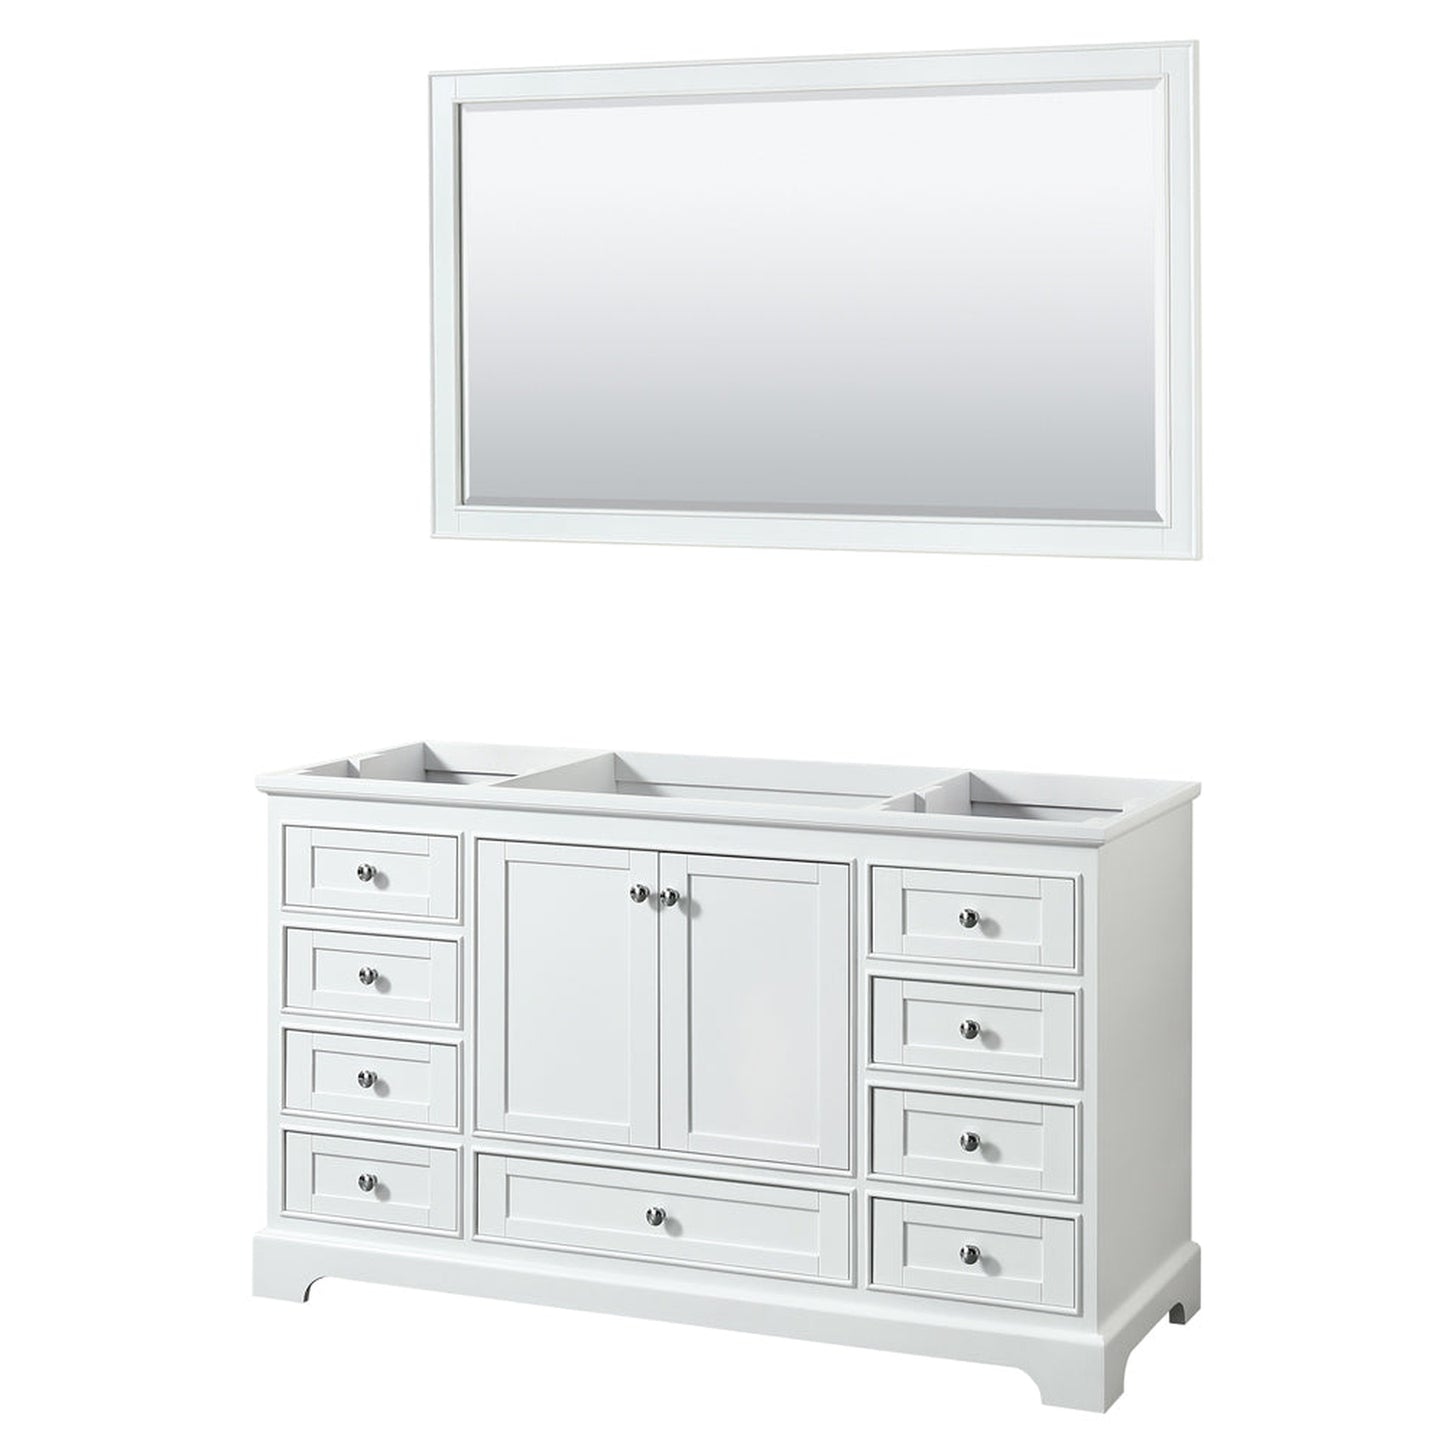 Wyndham Collection Deborah 60" Single Bathroom Vanity in White, No Countertop, No Sink, and 58" Mirror